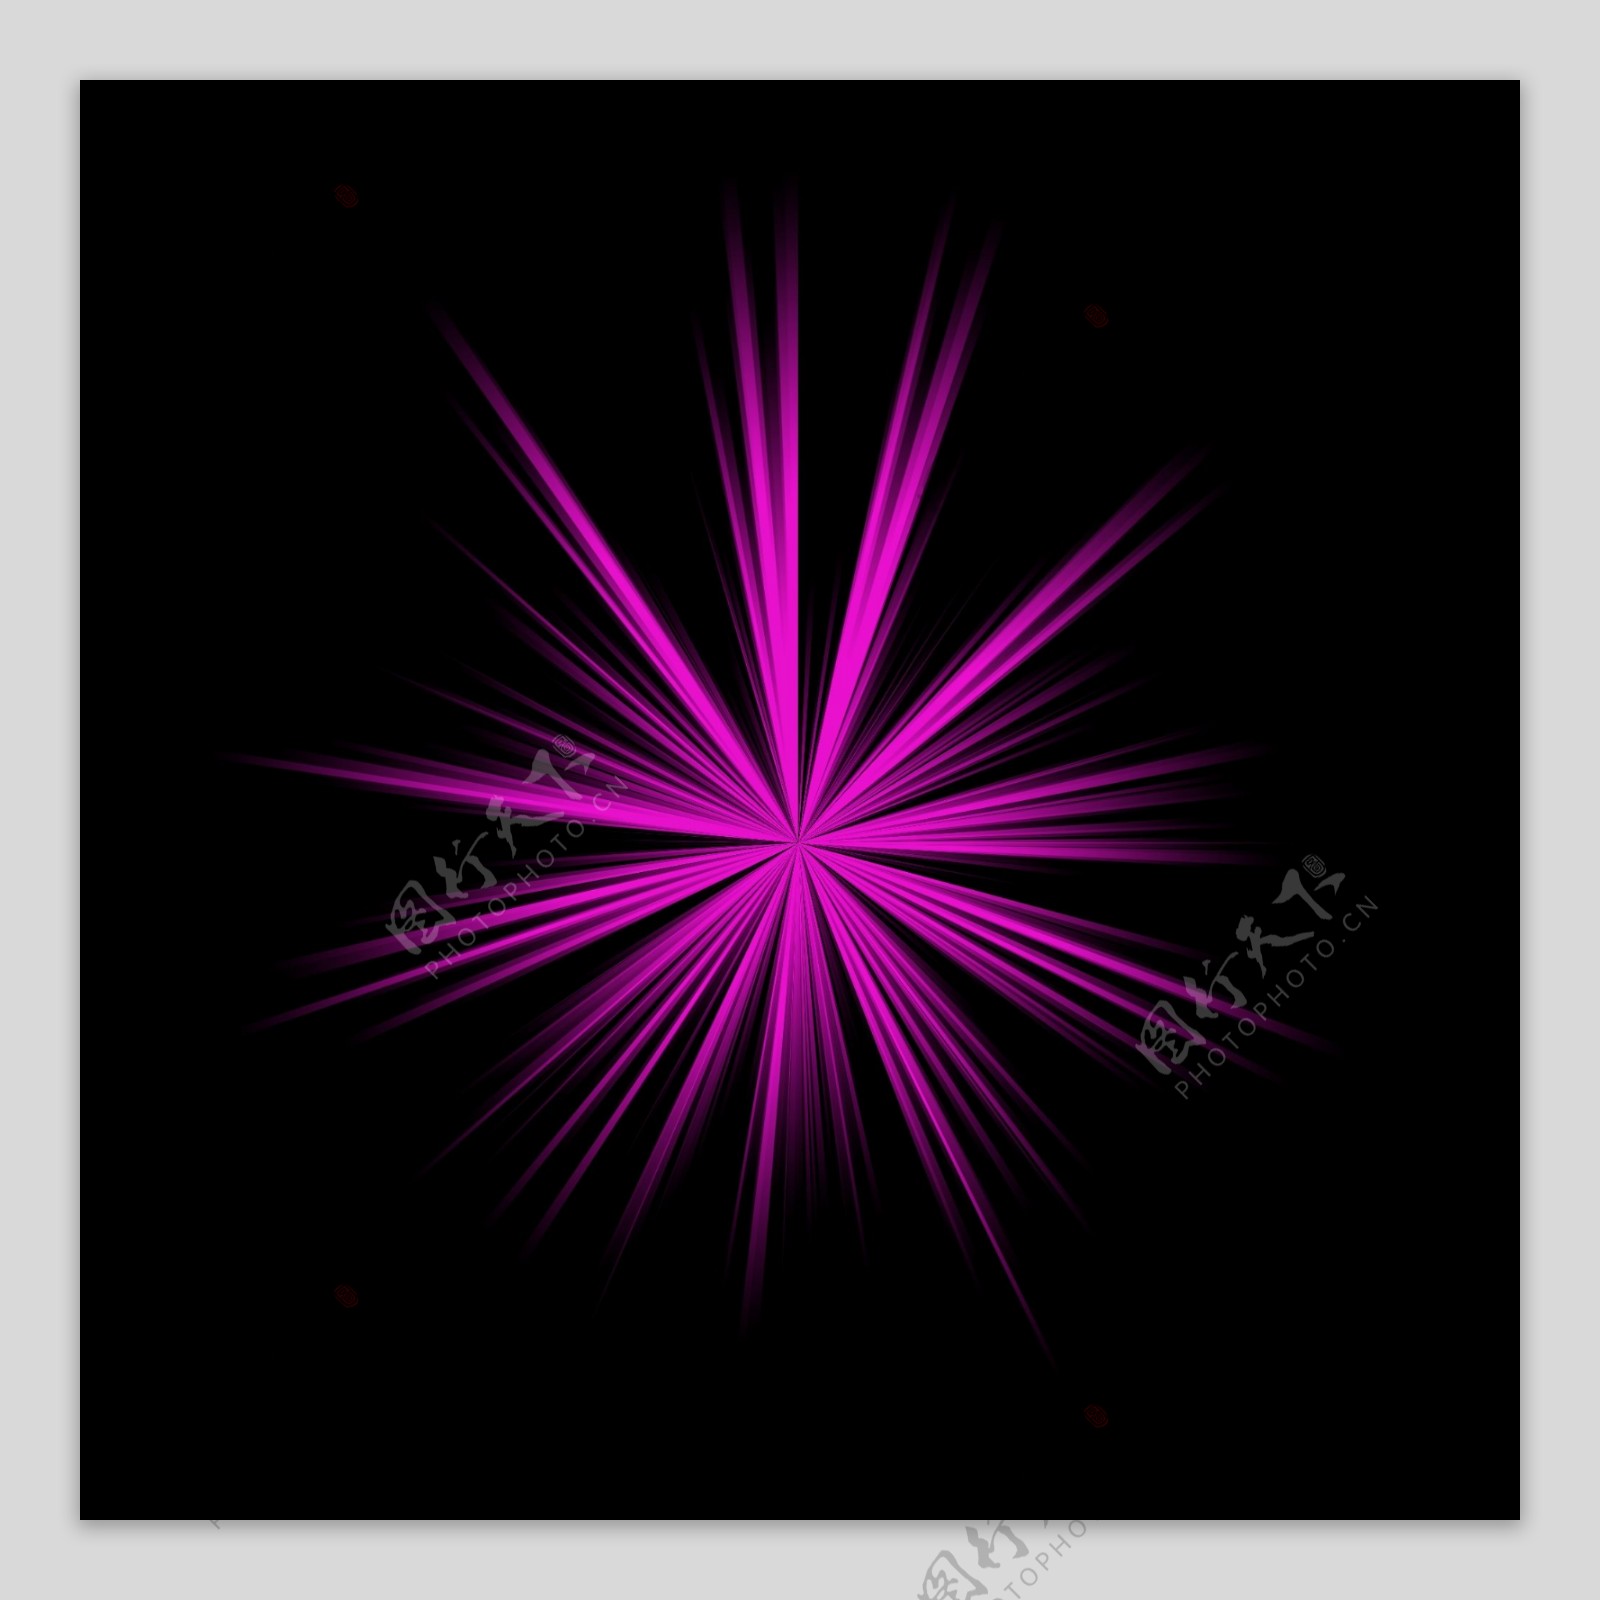 科技新星爆炸效果炫光紫色装饰背景